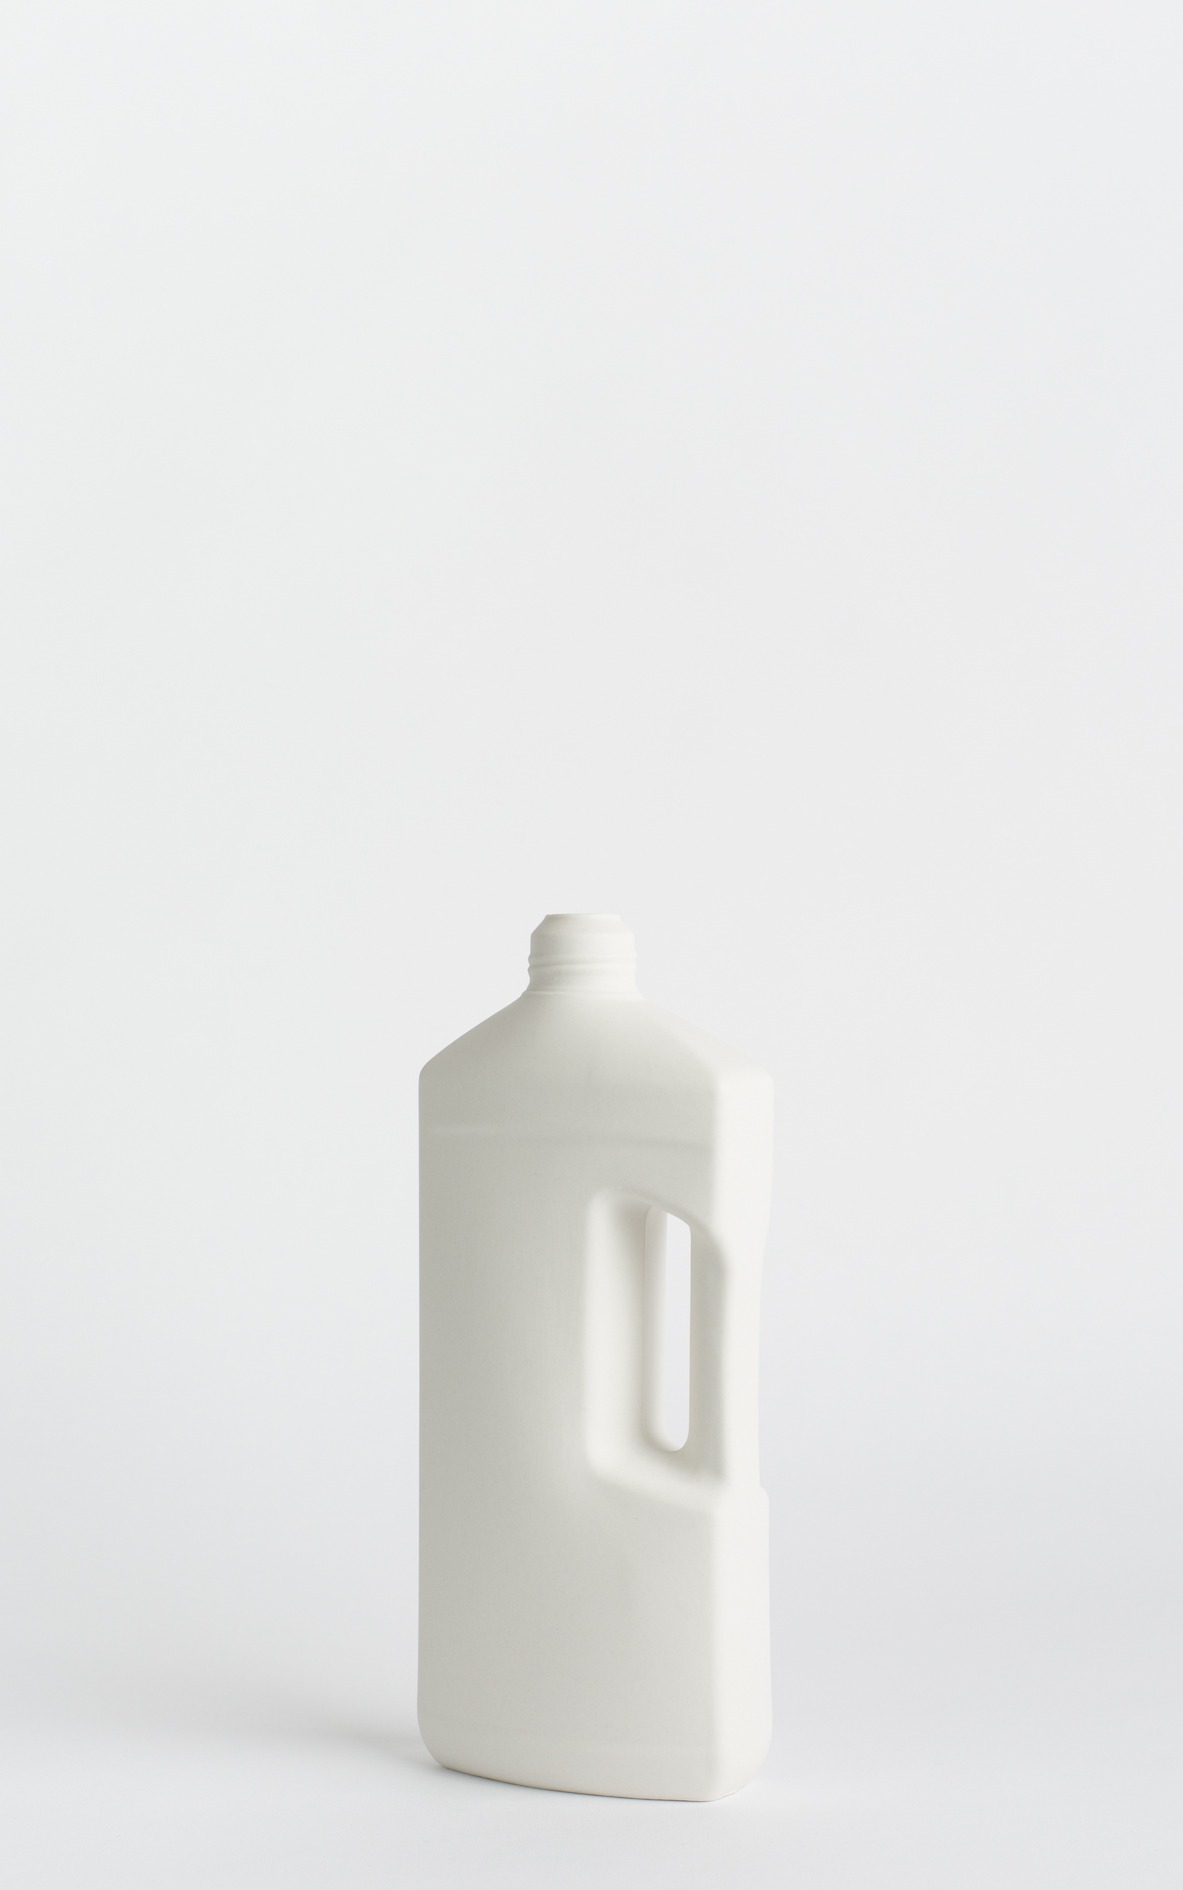 bottle vase #3 white